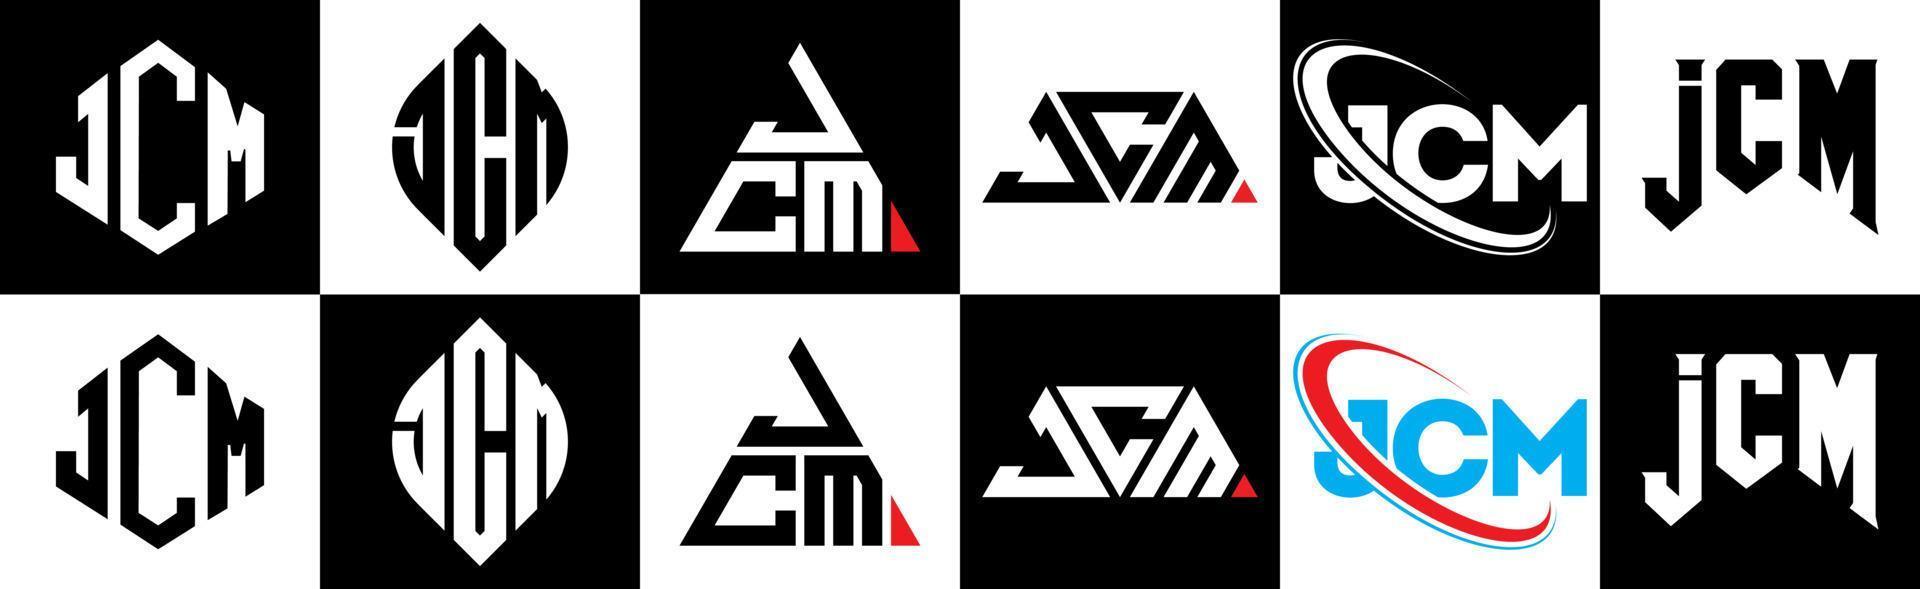 Diseño de logotipo de letra jcm en seis estilos. jcm polígono, círculo, triángulo, hexágono, estilo plano y simple con logotipo de letra de variación de color blanco y negro en una mesa de trabajo. logotipo minimalista y clásico de jcm vector